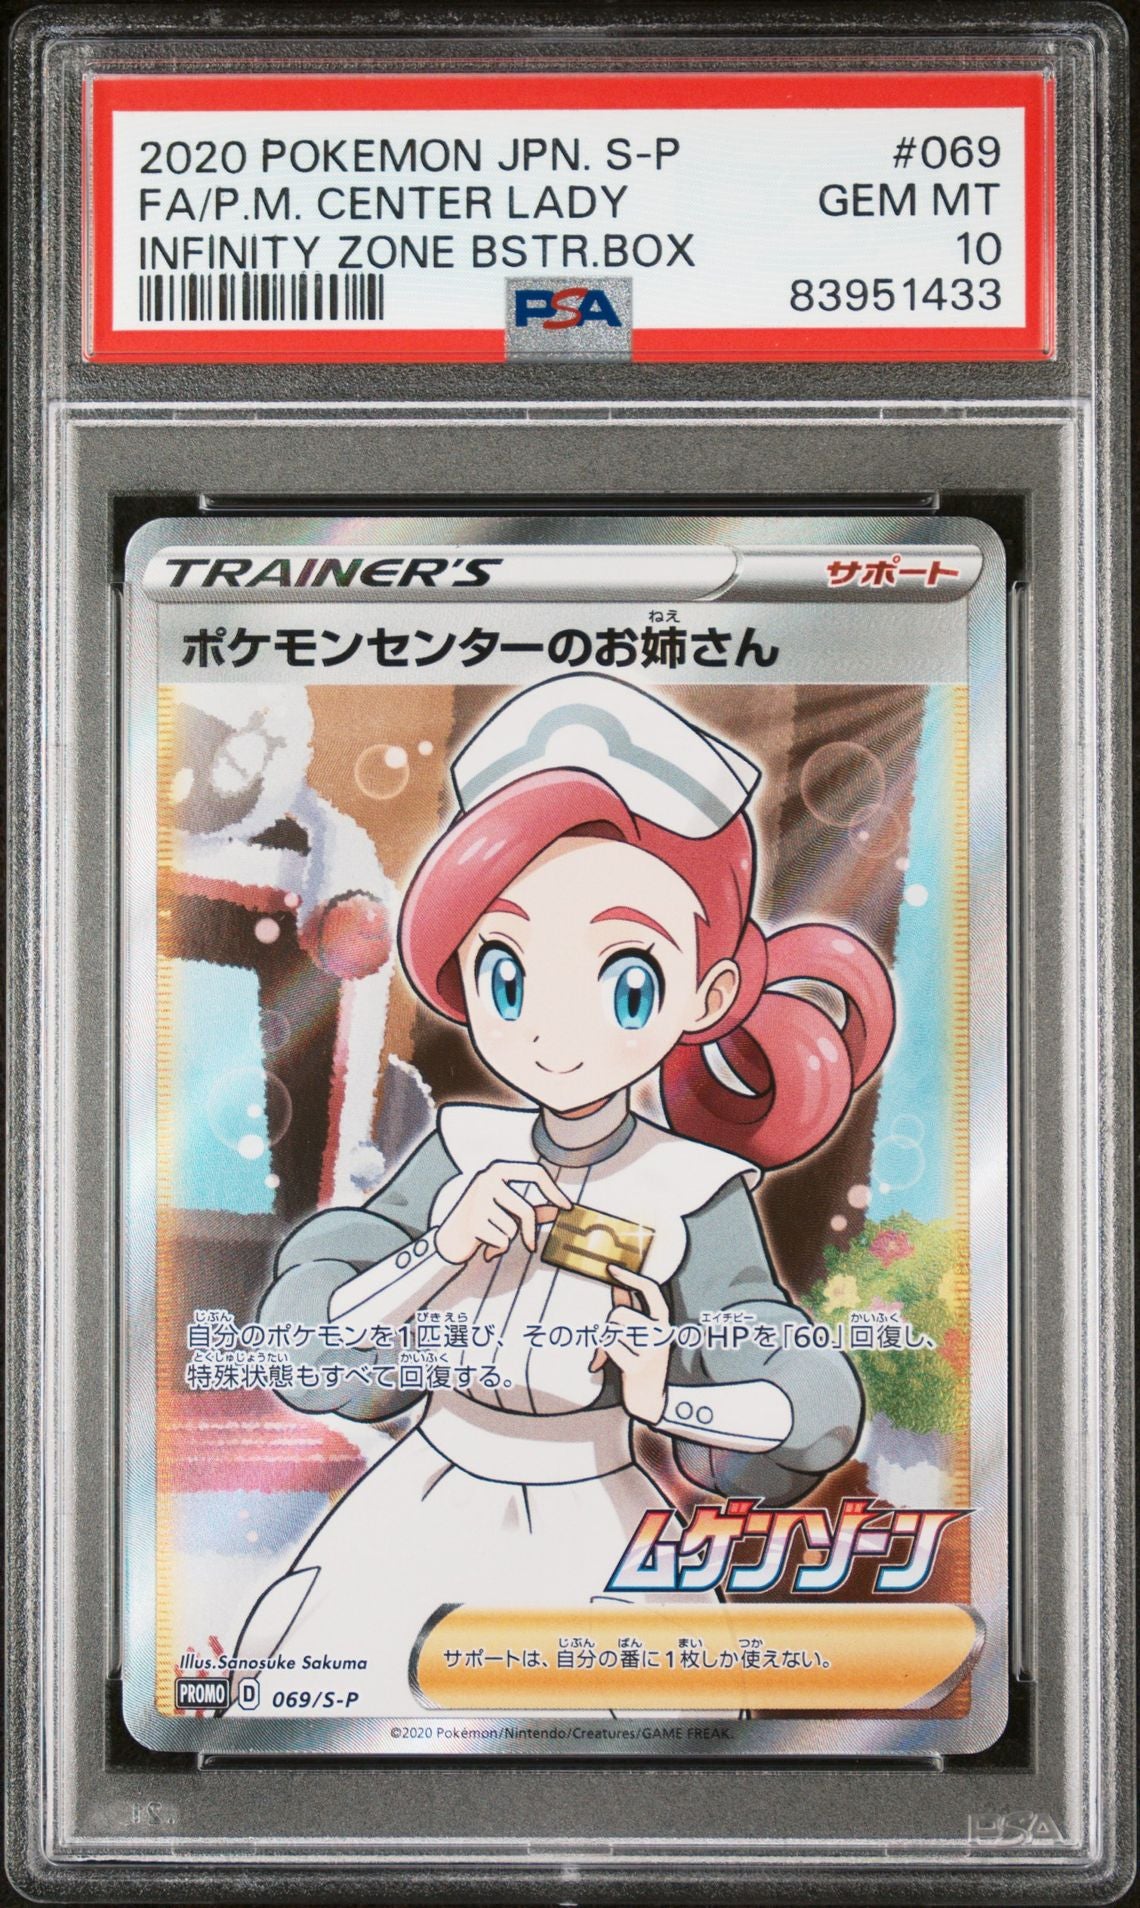 Pokémon Center Lady - Mugen Zone Promo Card - Japanese - PSA 10